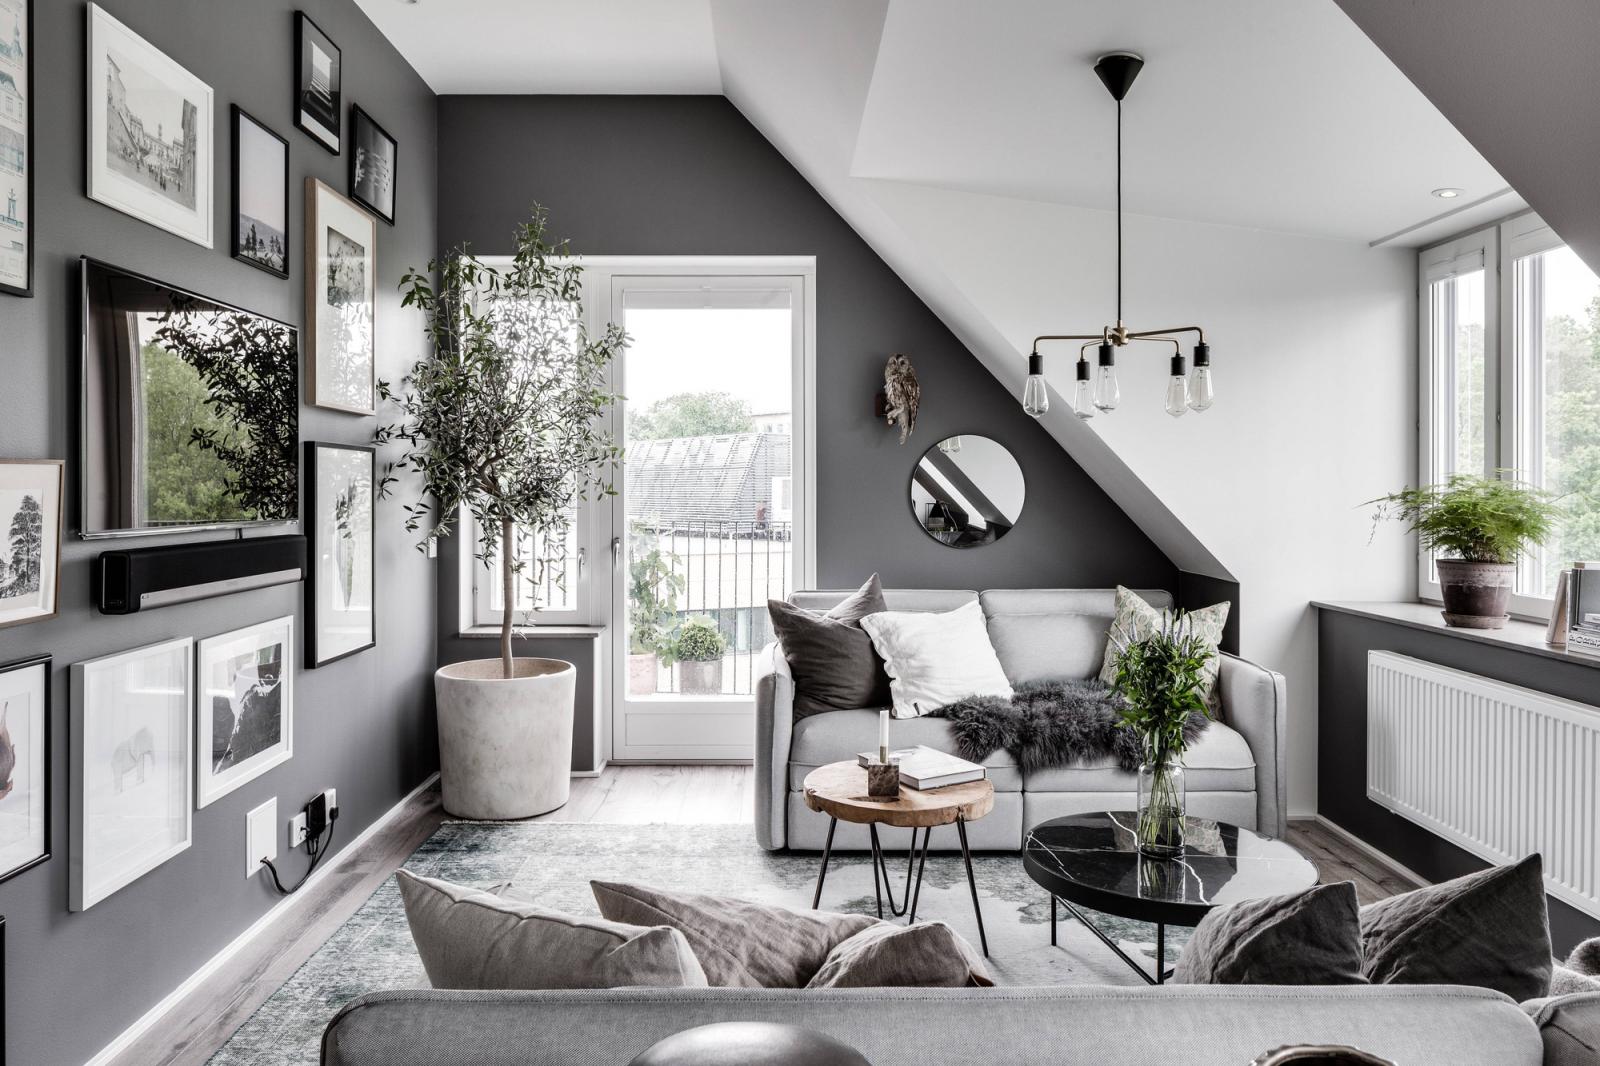 Hình ảnh phòng khách với tông màu xám trắng chủ đạo, sofa êm ái tranh treo tường, cây xanh trang trí